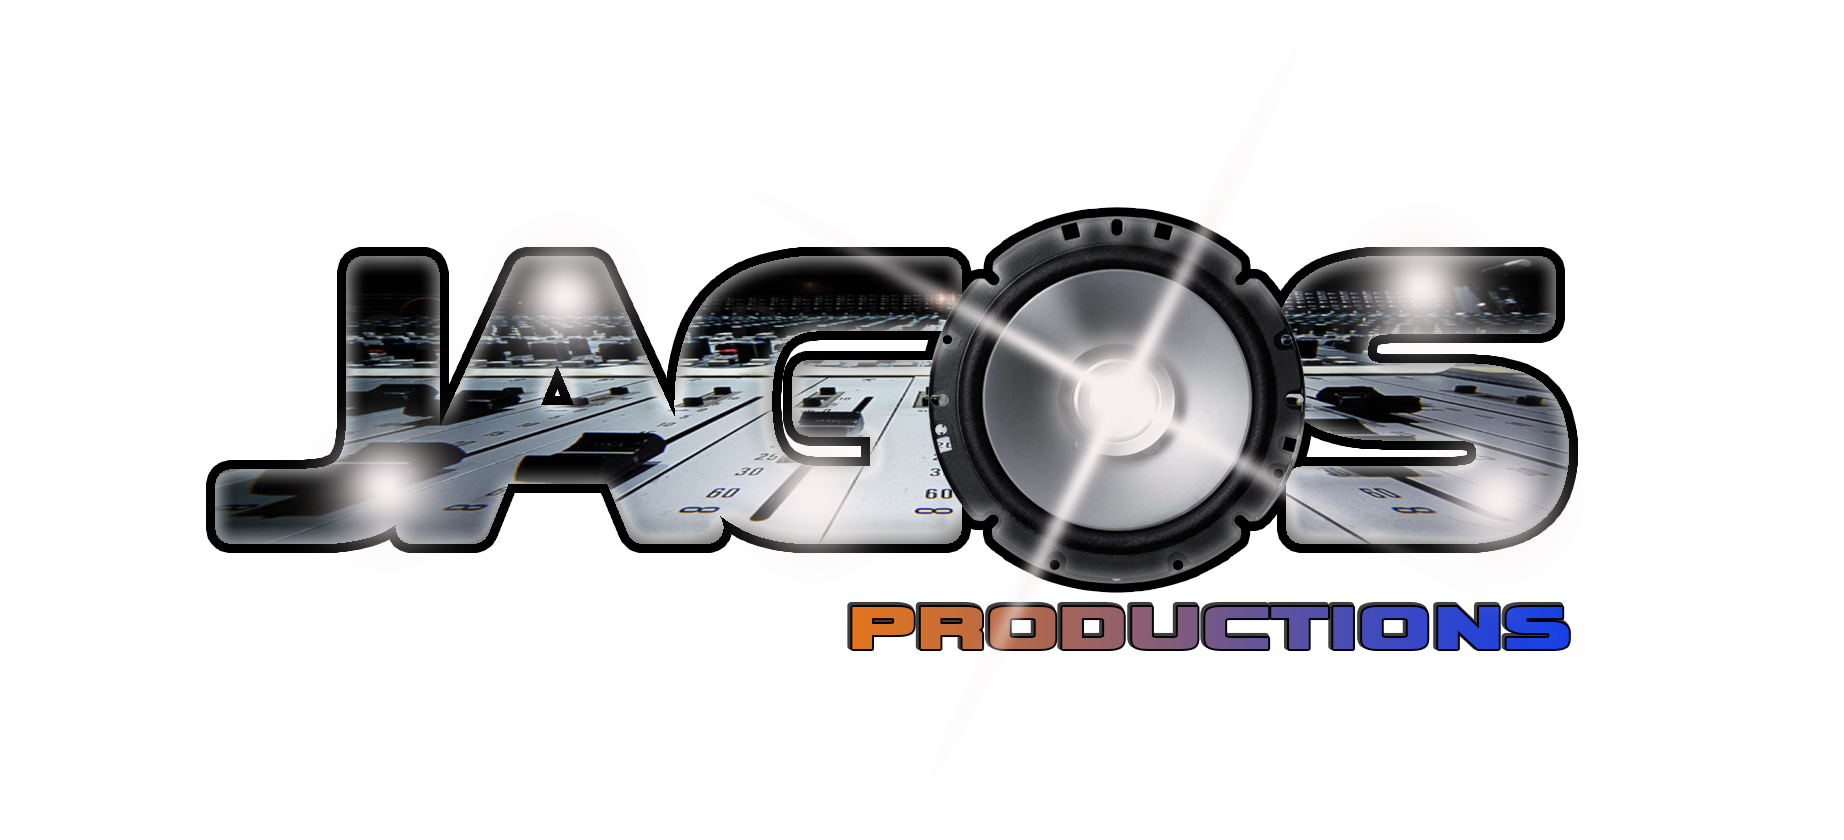 Jagos Productions